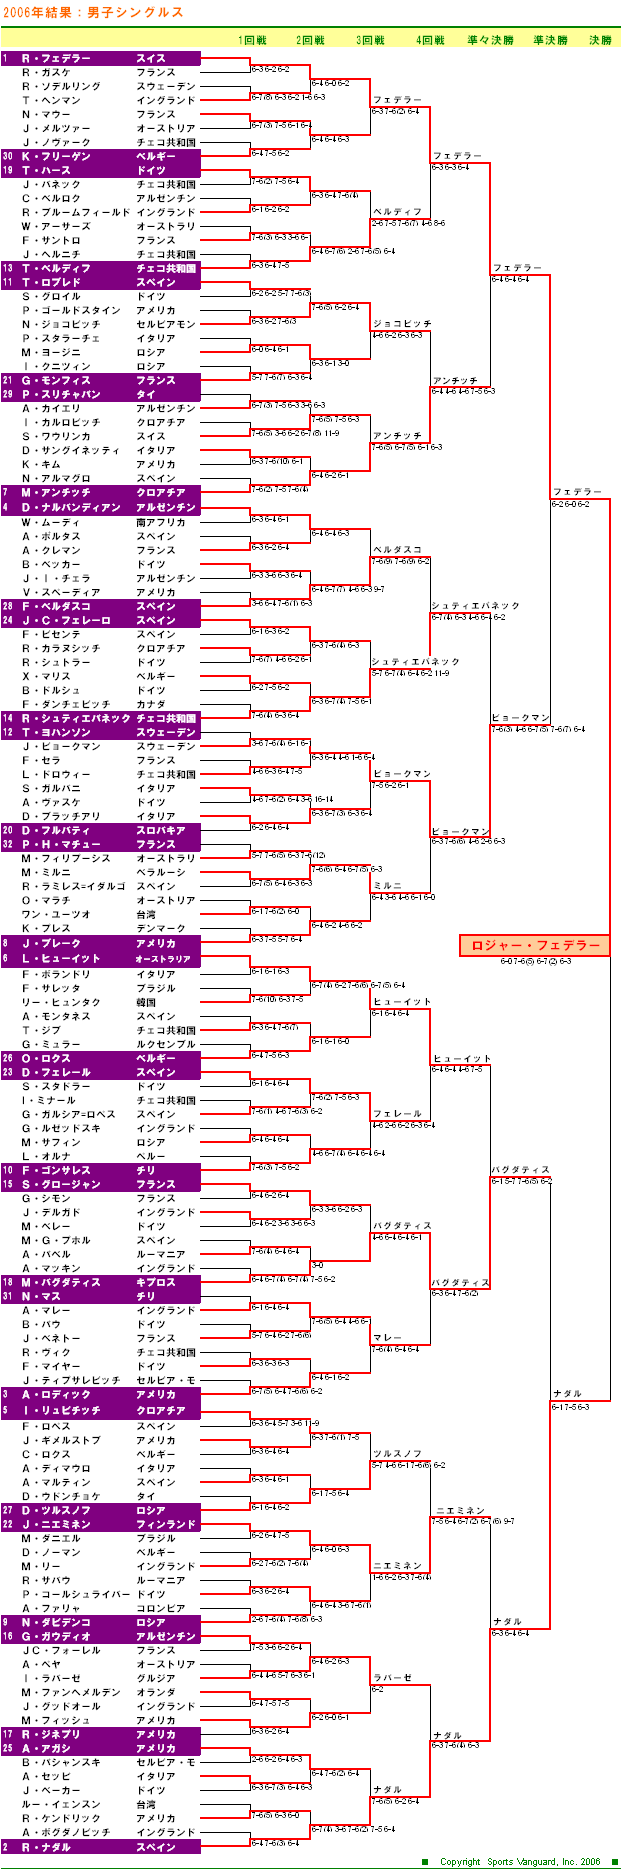 ウィンブルドンテニス2006　男子シングルスドロー表